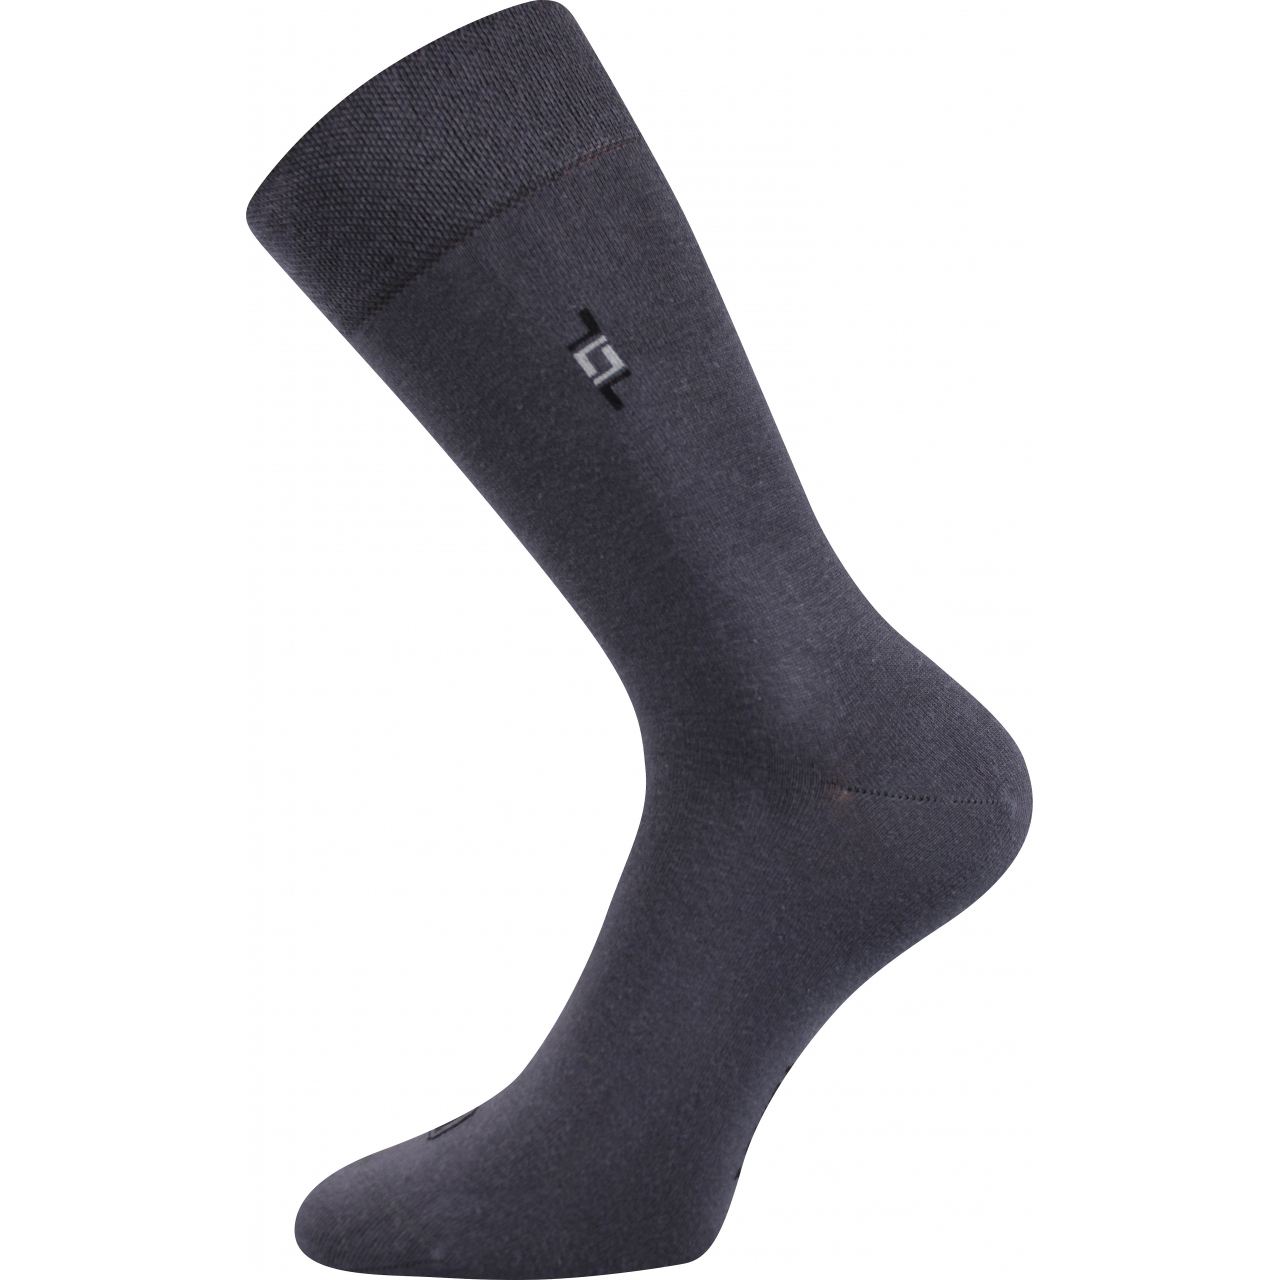 Ponožky pánské společenské Lonka Despok - tmavě šedé, 39-42